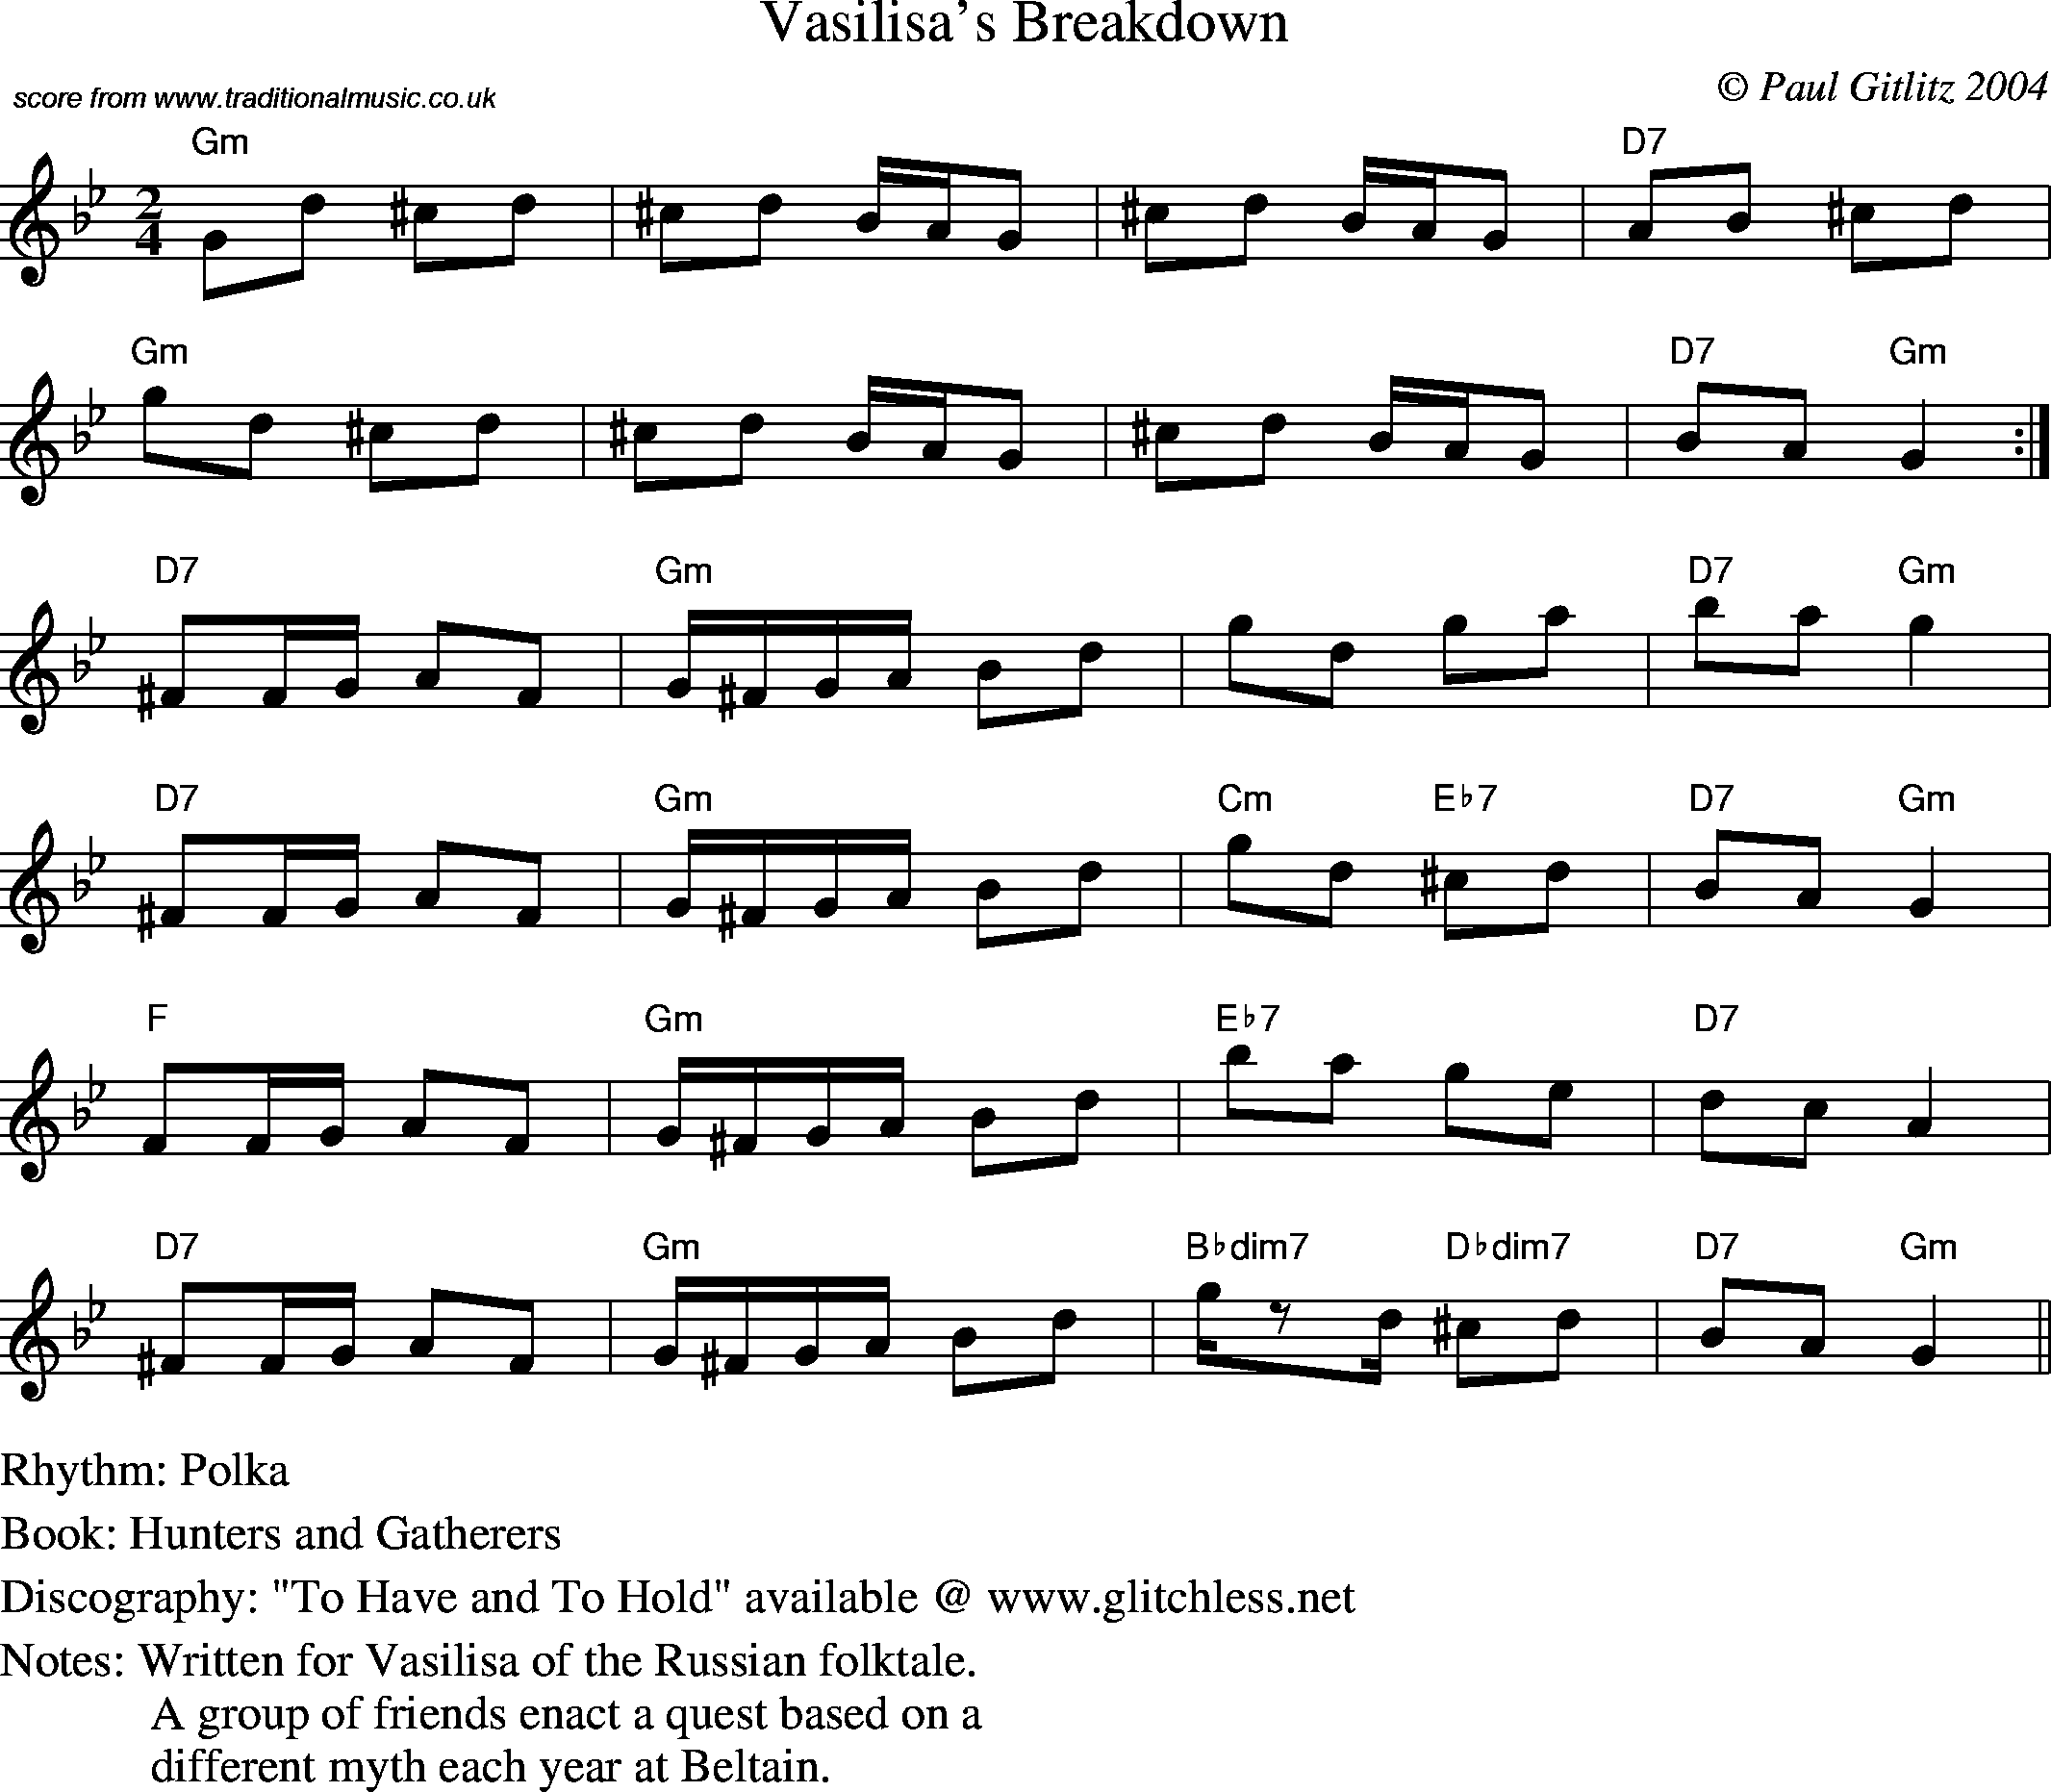 Sheet Music Score for Polka - Vasilisa's Breakdown